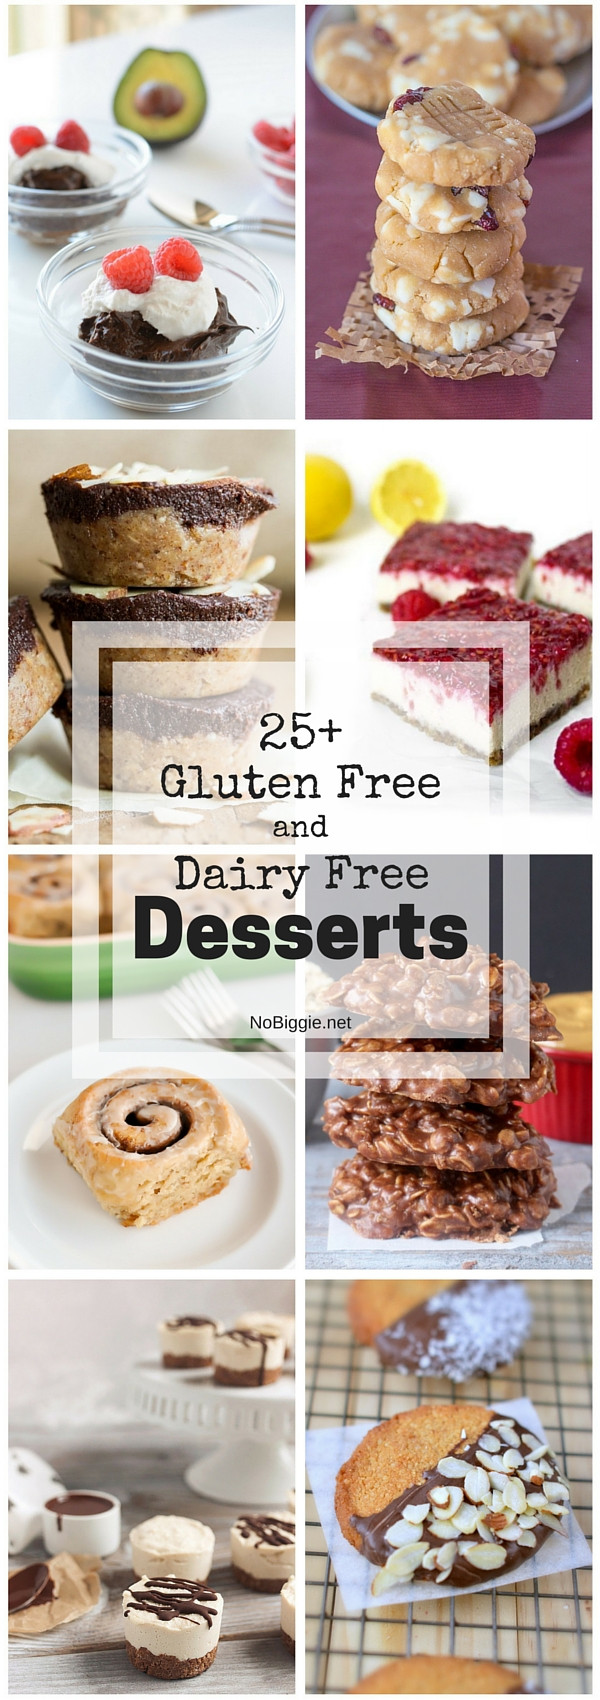 Dairy Free And Gluten Free Desserts
 25 Gluten Free and Dairy Free Desserts